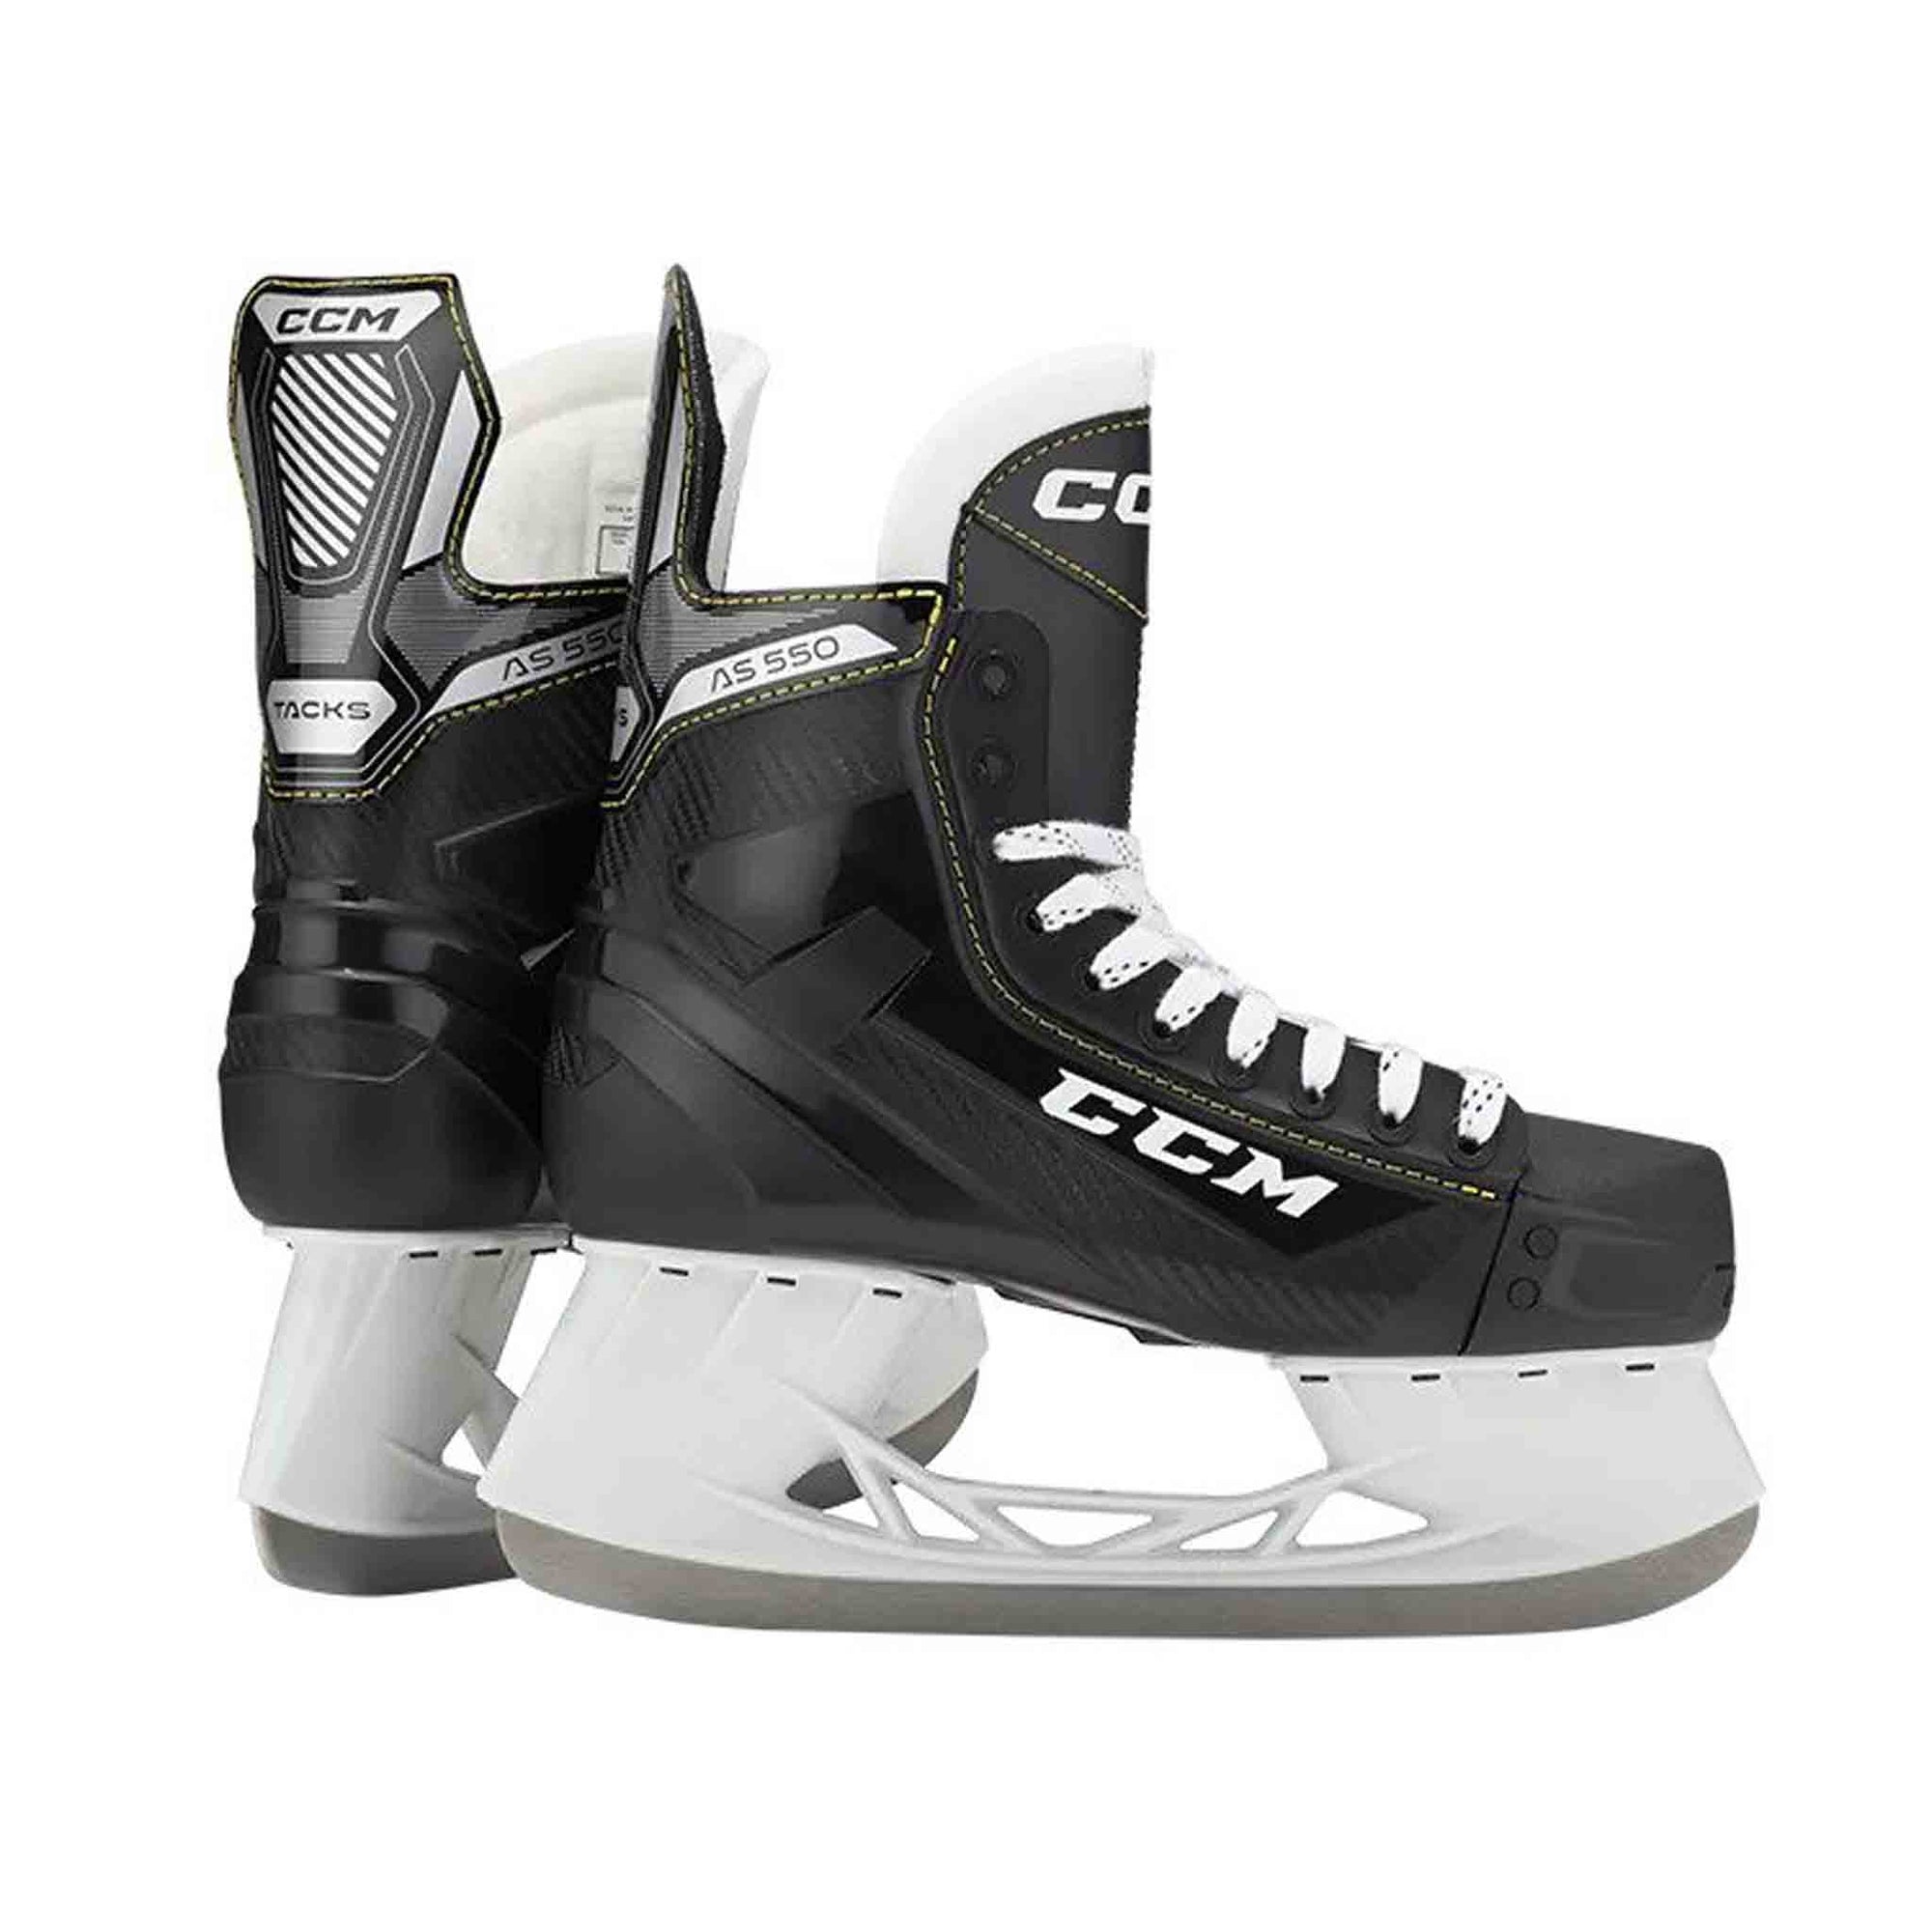 CCM Skates Tacks AS-550 Ice Skates | JT Skate London UK